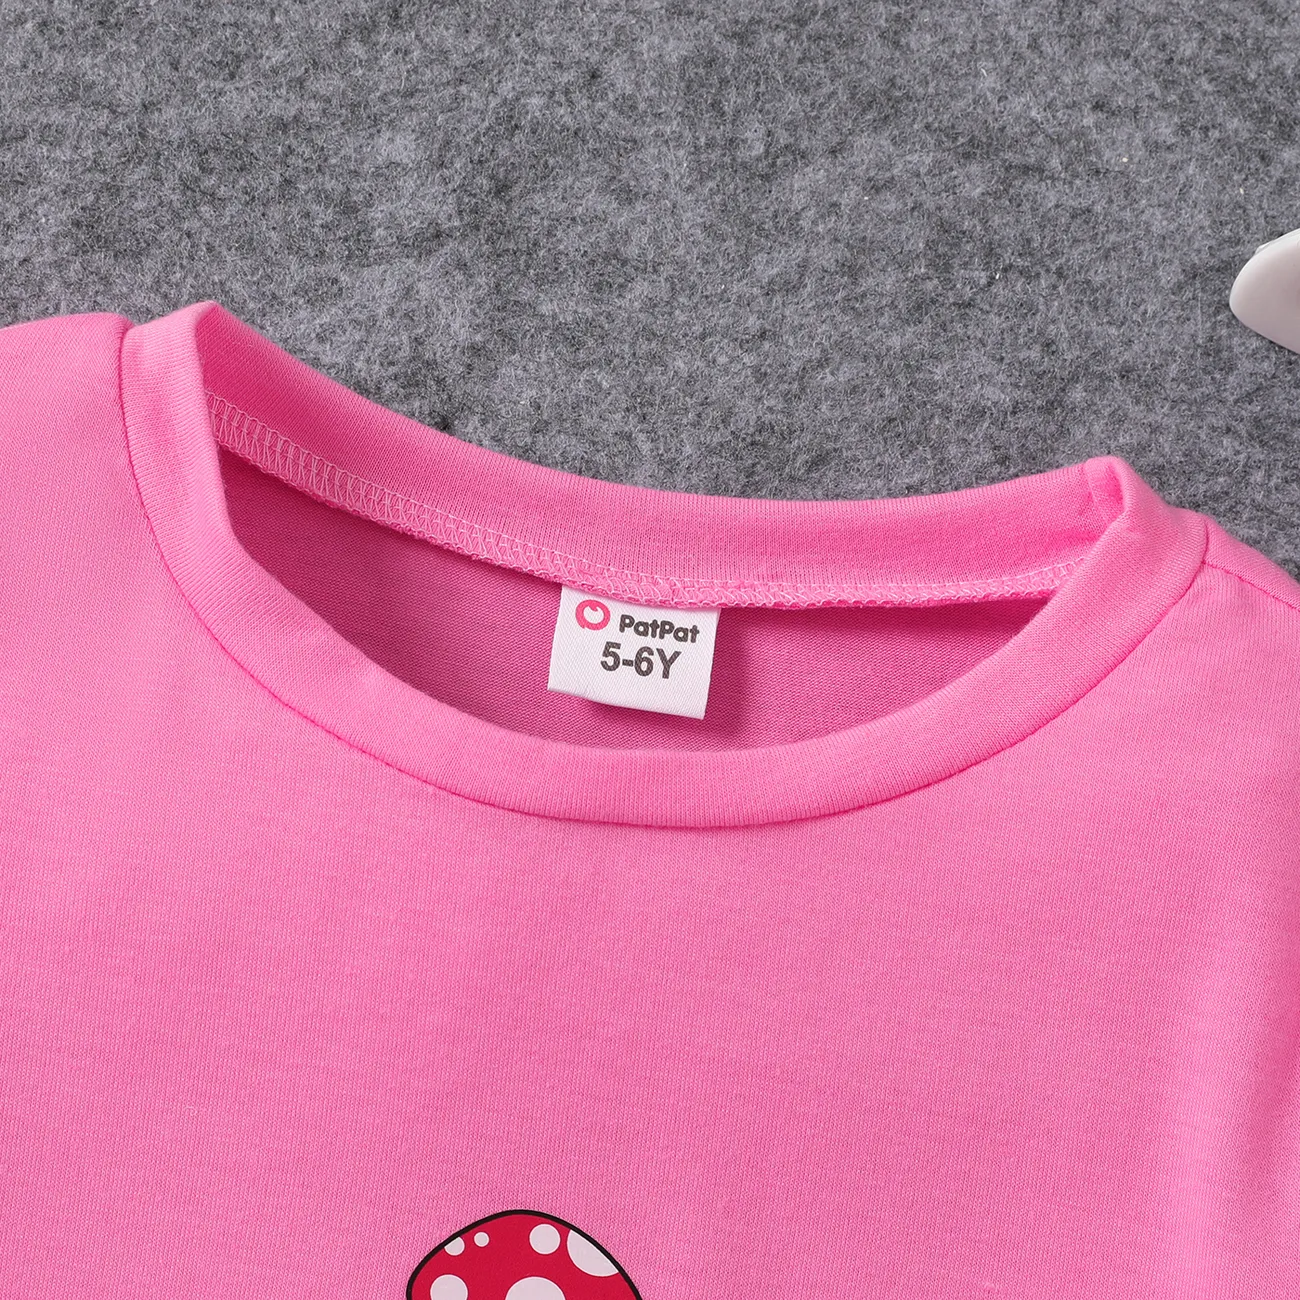 Chicos Chica Cordón Frutas y verduras Manga corta Camiseta Rosado big image 1